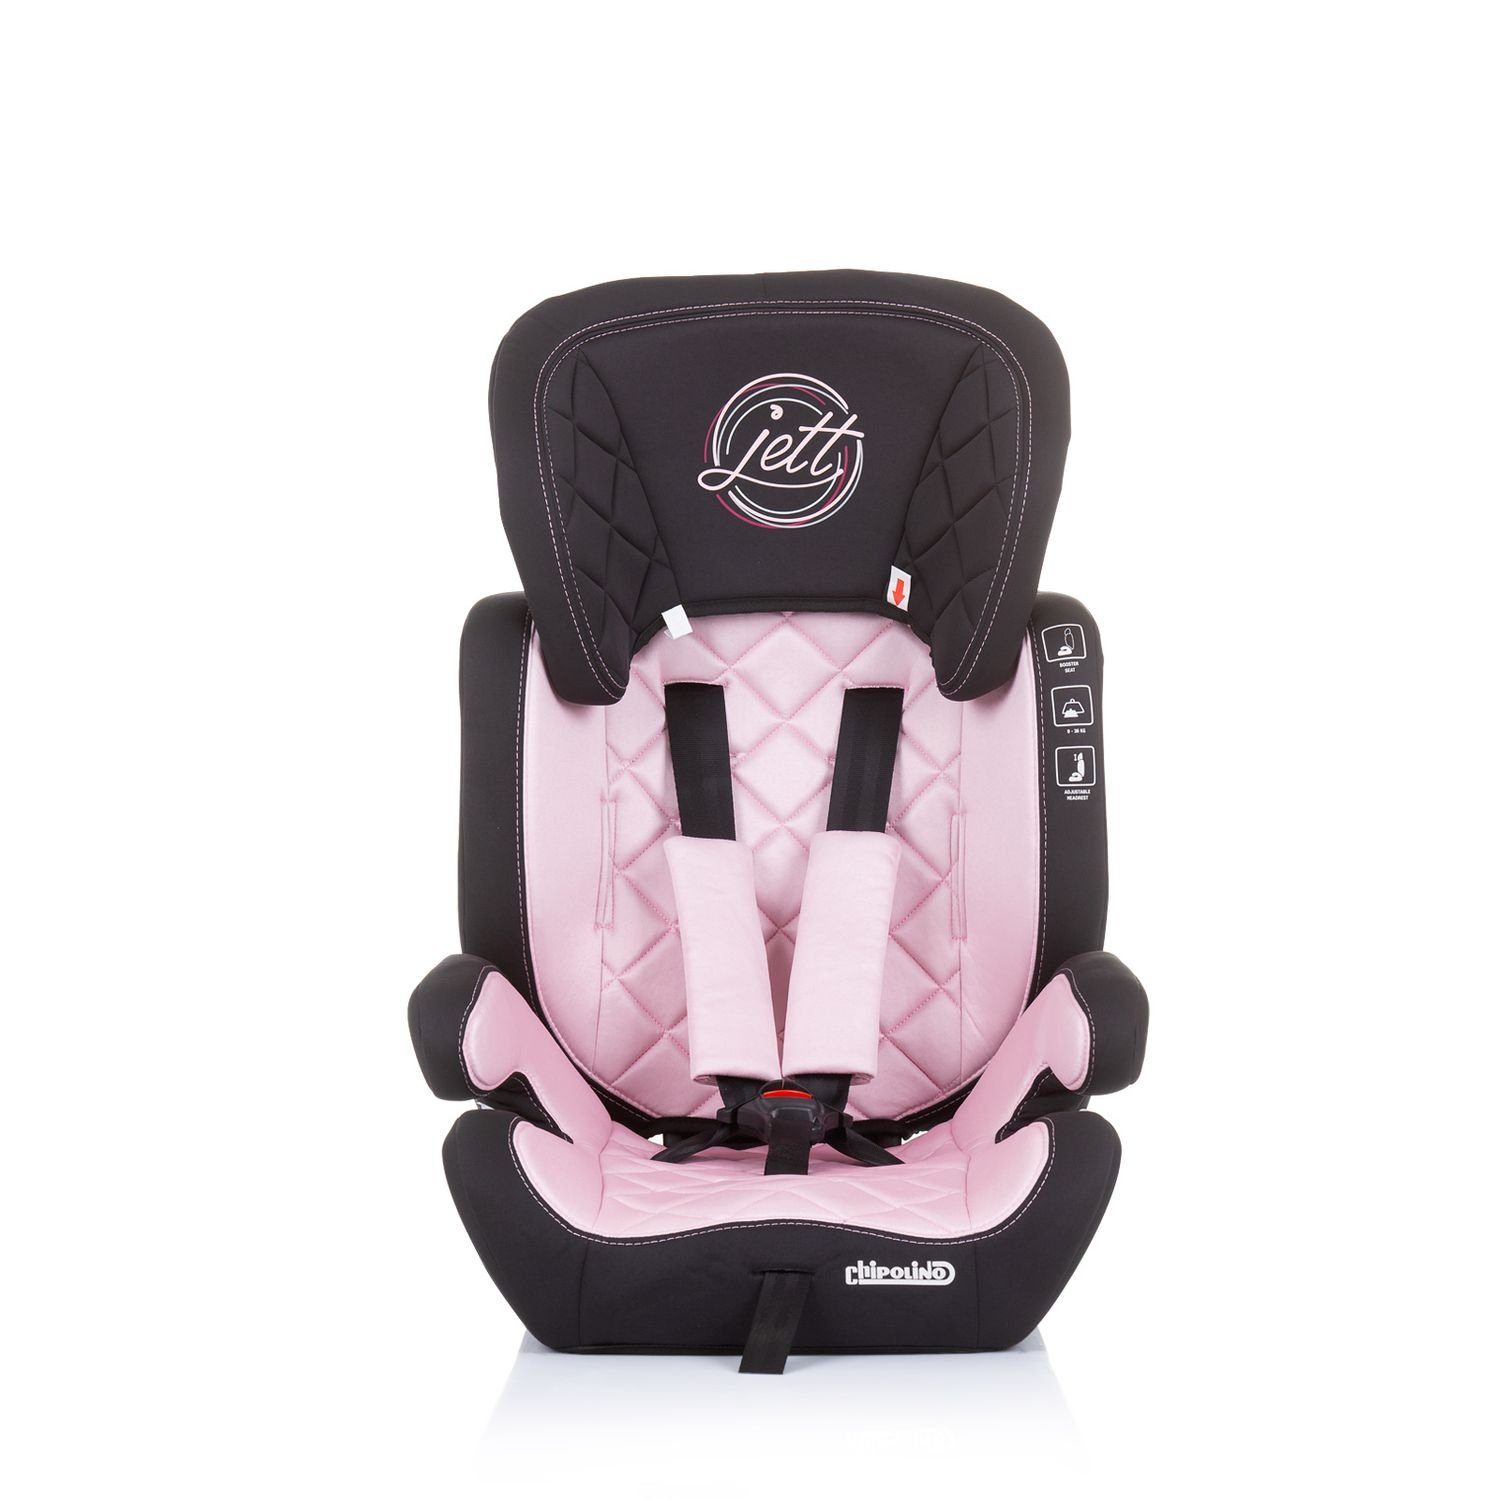 - bis: Jett Kopfstütze 36 Chipolino Kindersitz (9 kg), Autokindersitz rosa Gruppe 36 Baby verstellbare kg, 1/2/3,